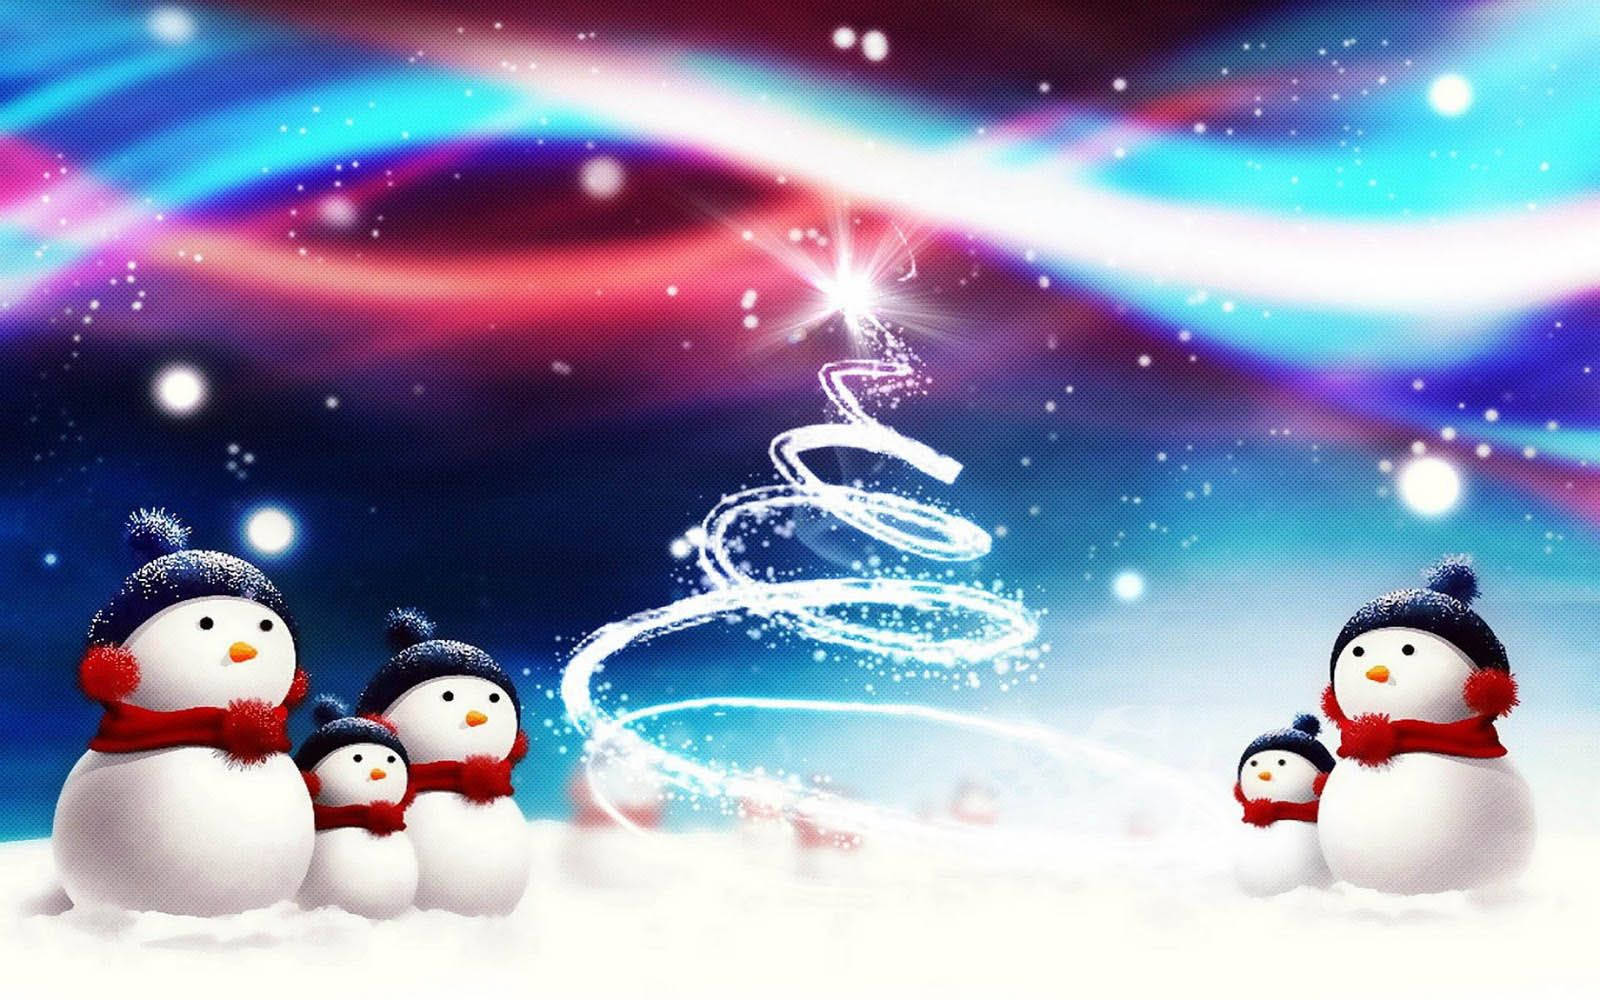 Snowman Aurora Christmas Background